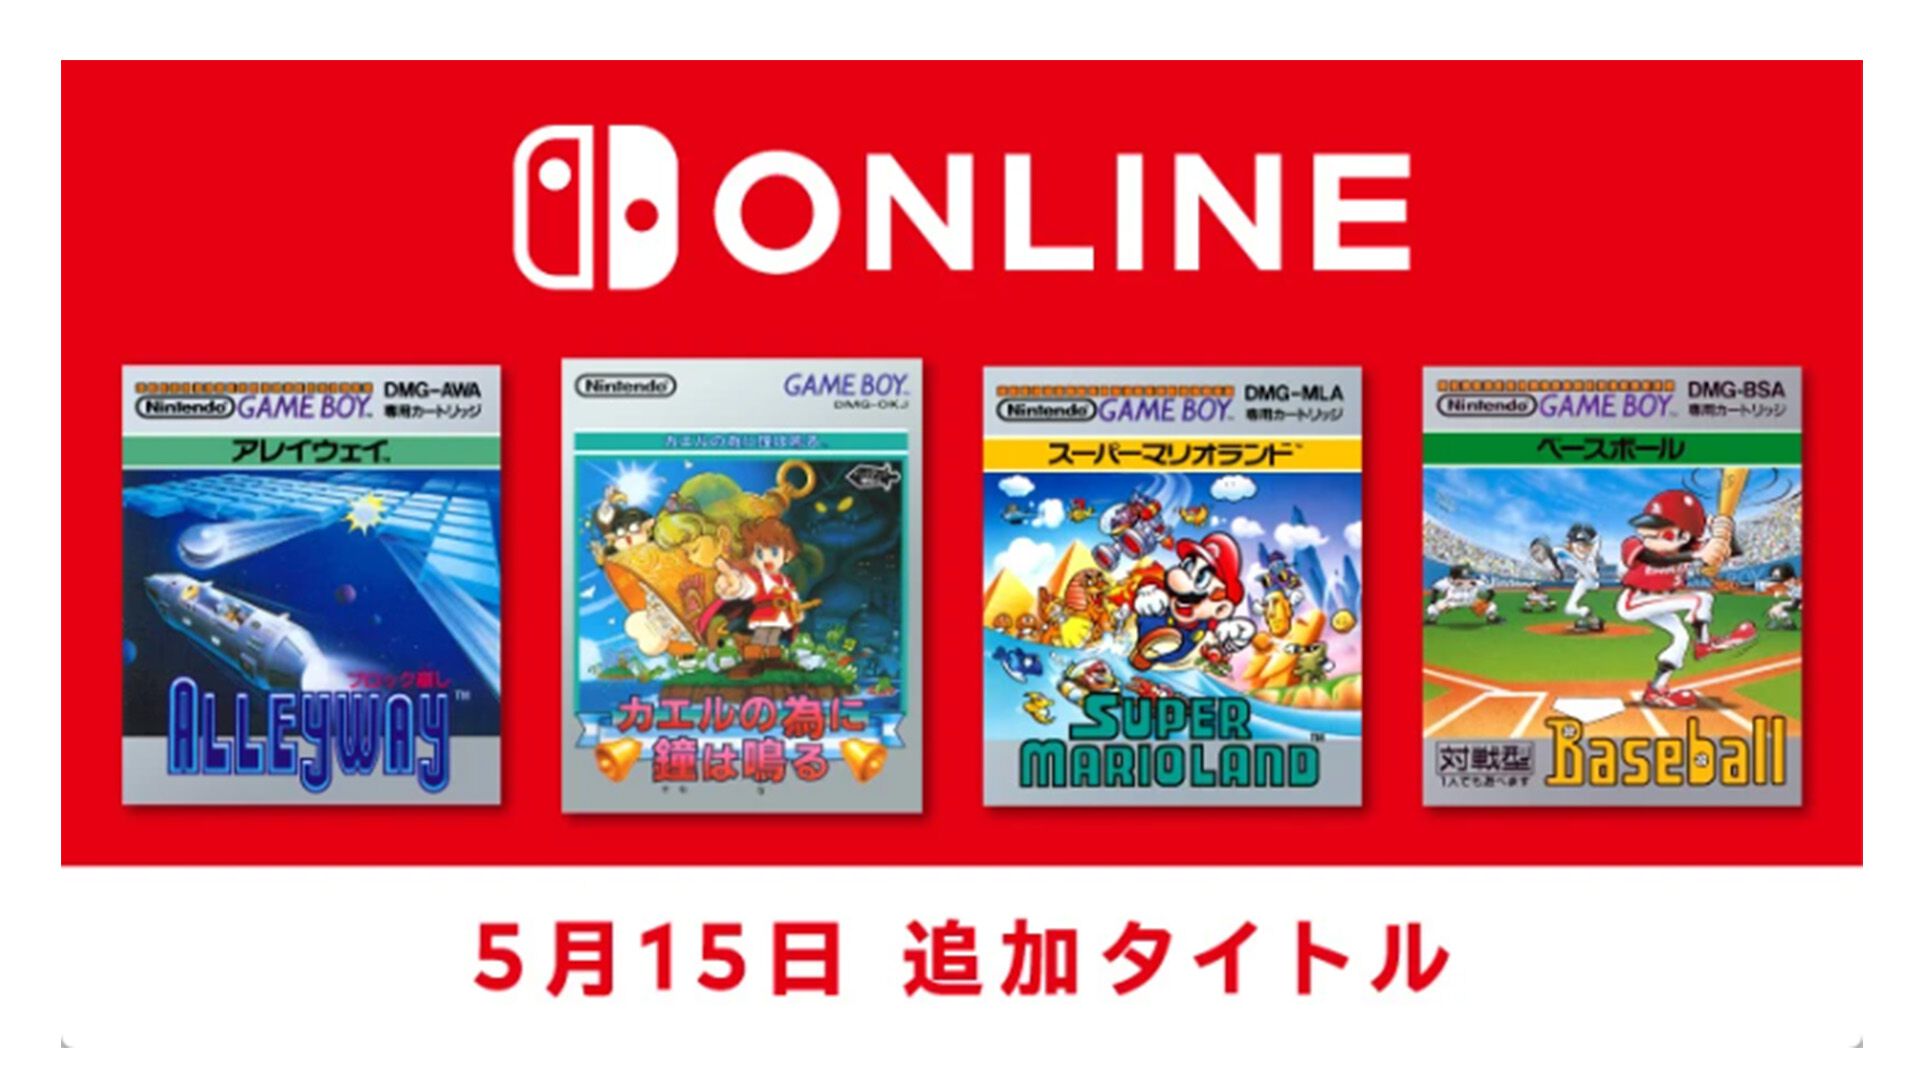 ゲームボーイ Nintendo Switch Onlineに『スーパーマリオランド』『アレイウェイ』『カエルの為に鐘は鳴る』『ベースボール』の4タイトルが追加